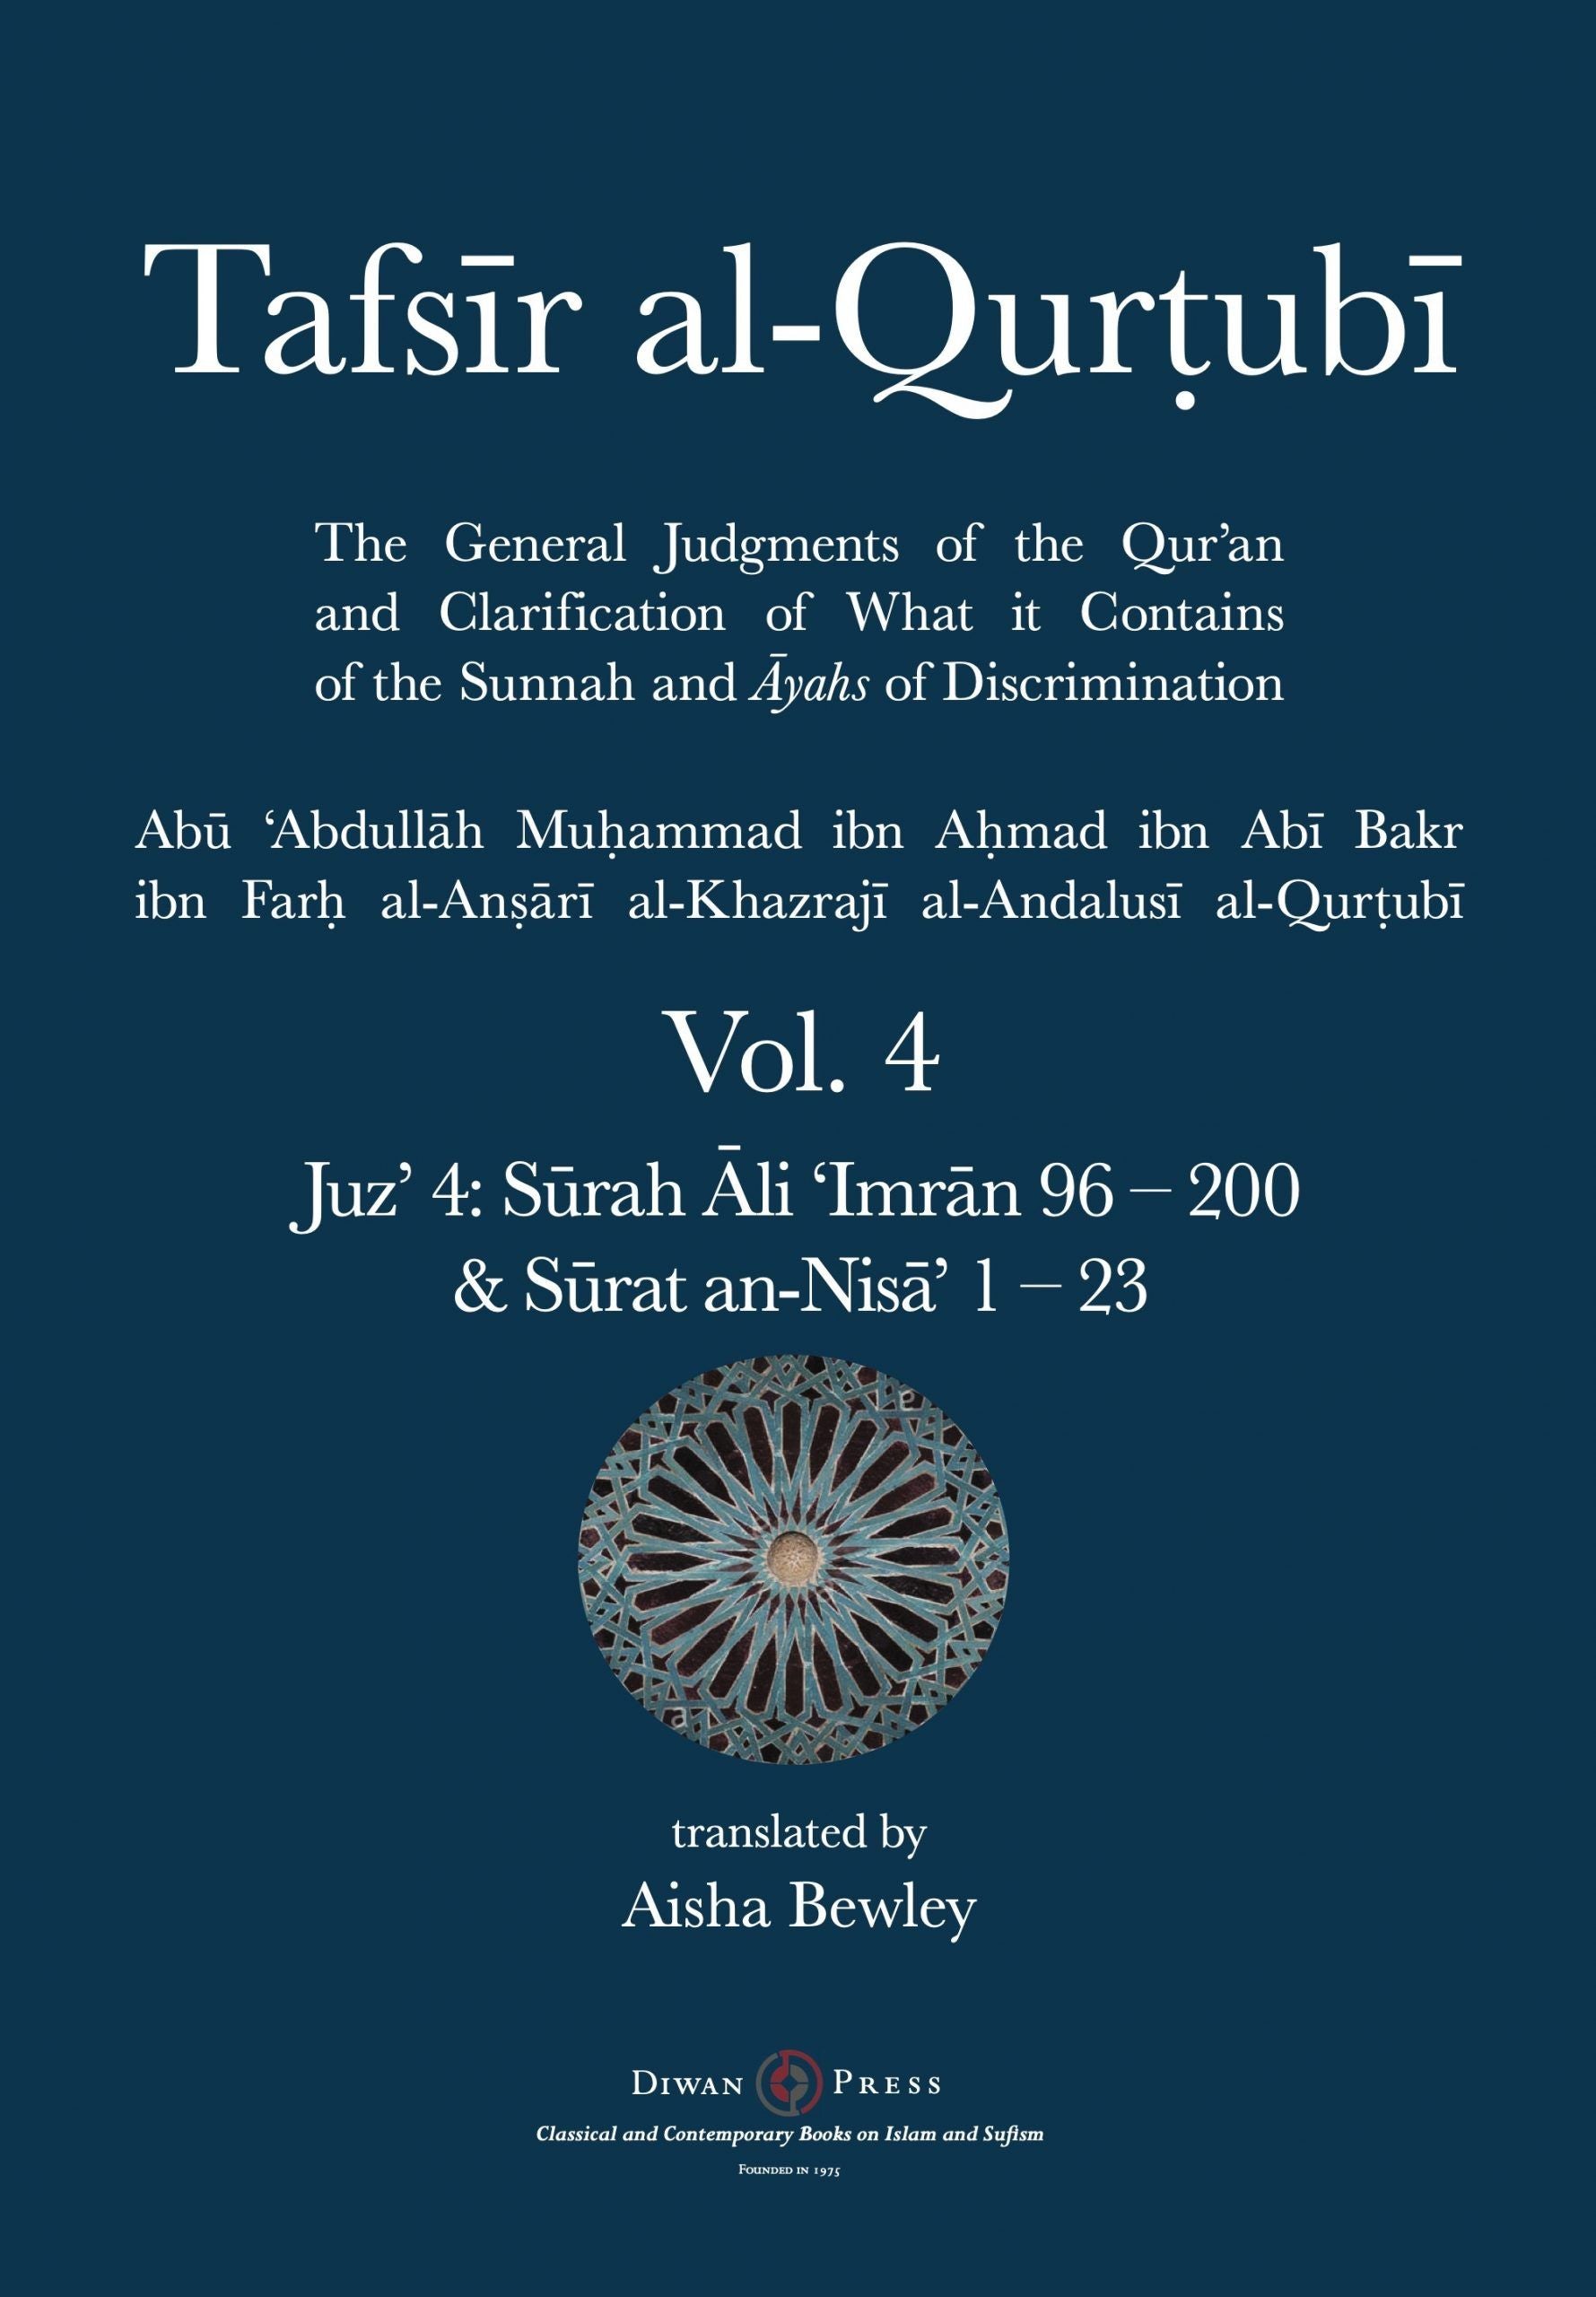 Tafsir al-Qurtubi – Vol. 4 Juz’ 4: Surah Ali ‘Imran 96 – 200 & Surat an-Nisa’ 1 – 23